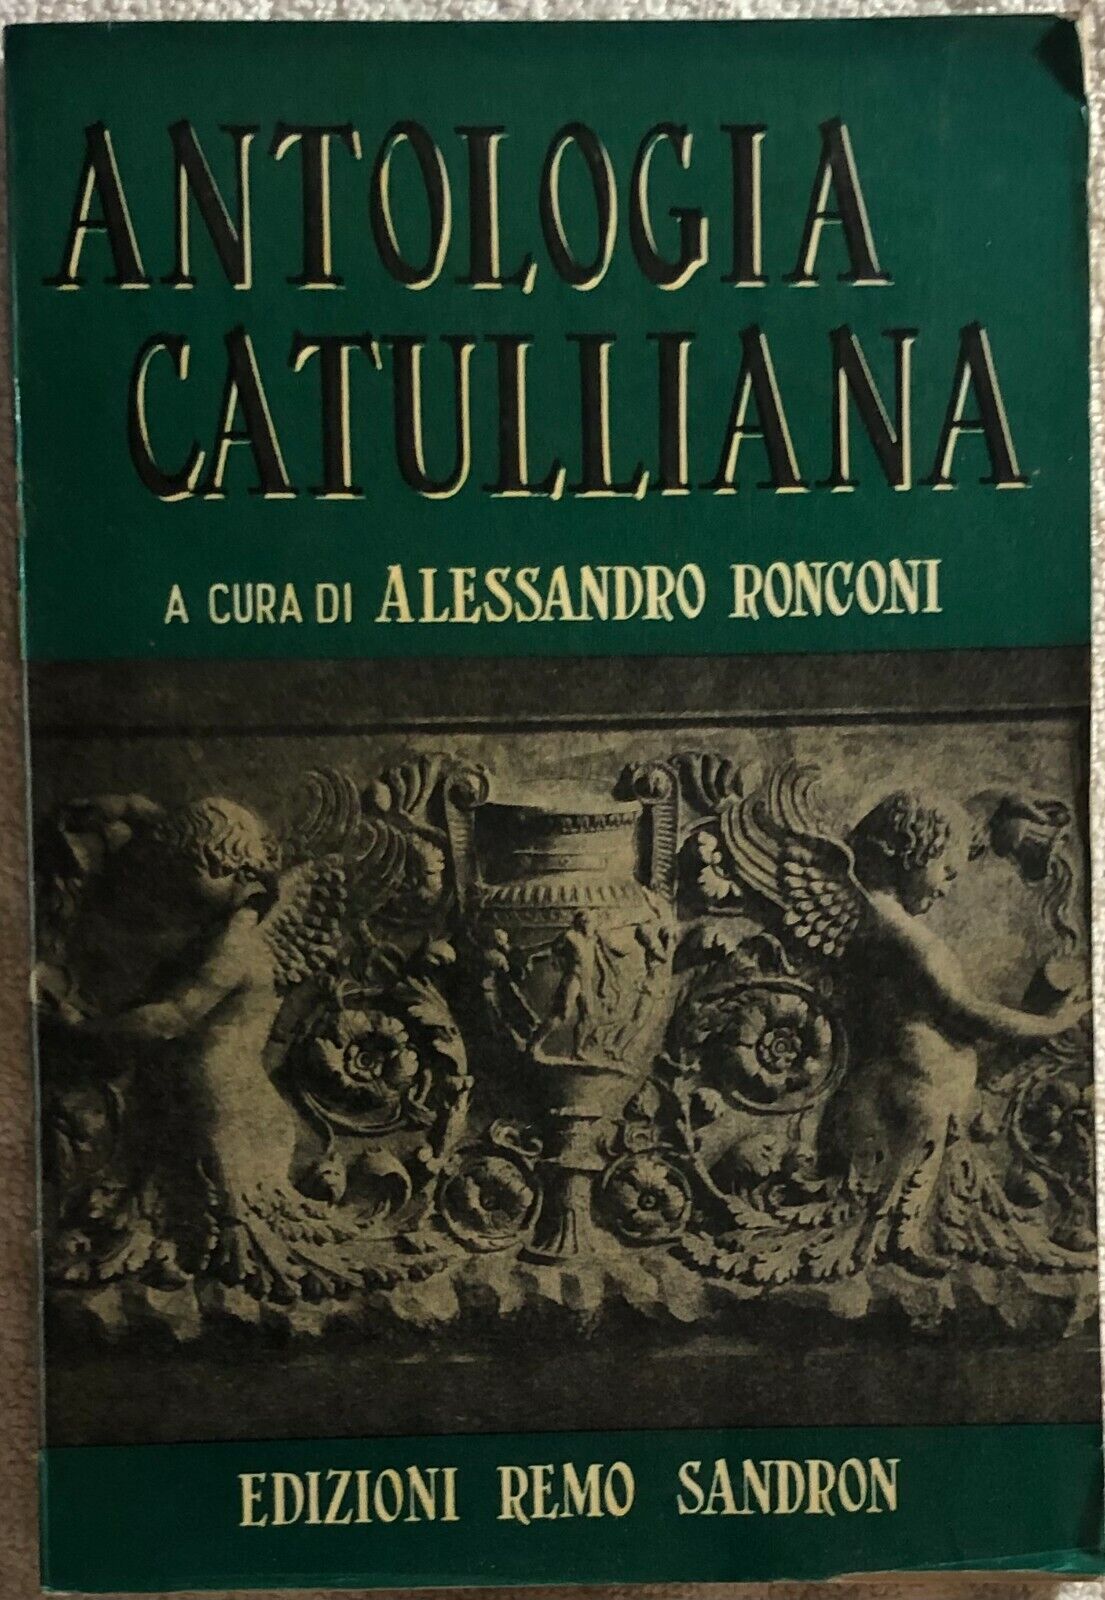 Antologia catulliana di Alessandro Ronconi,  1967,  Edizioni Remo Sandron